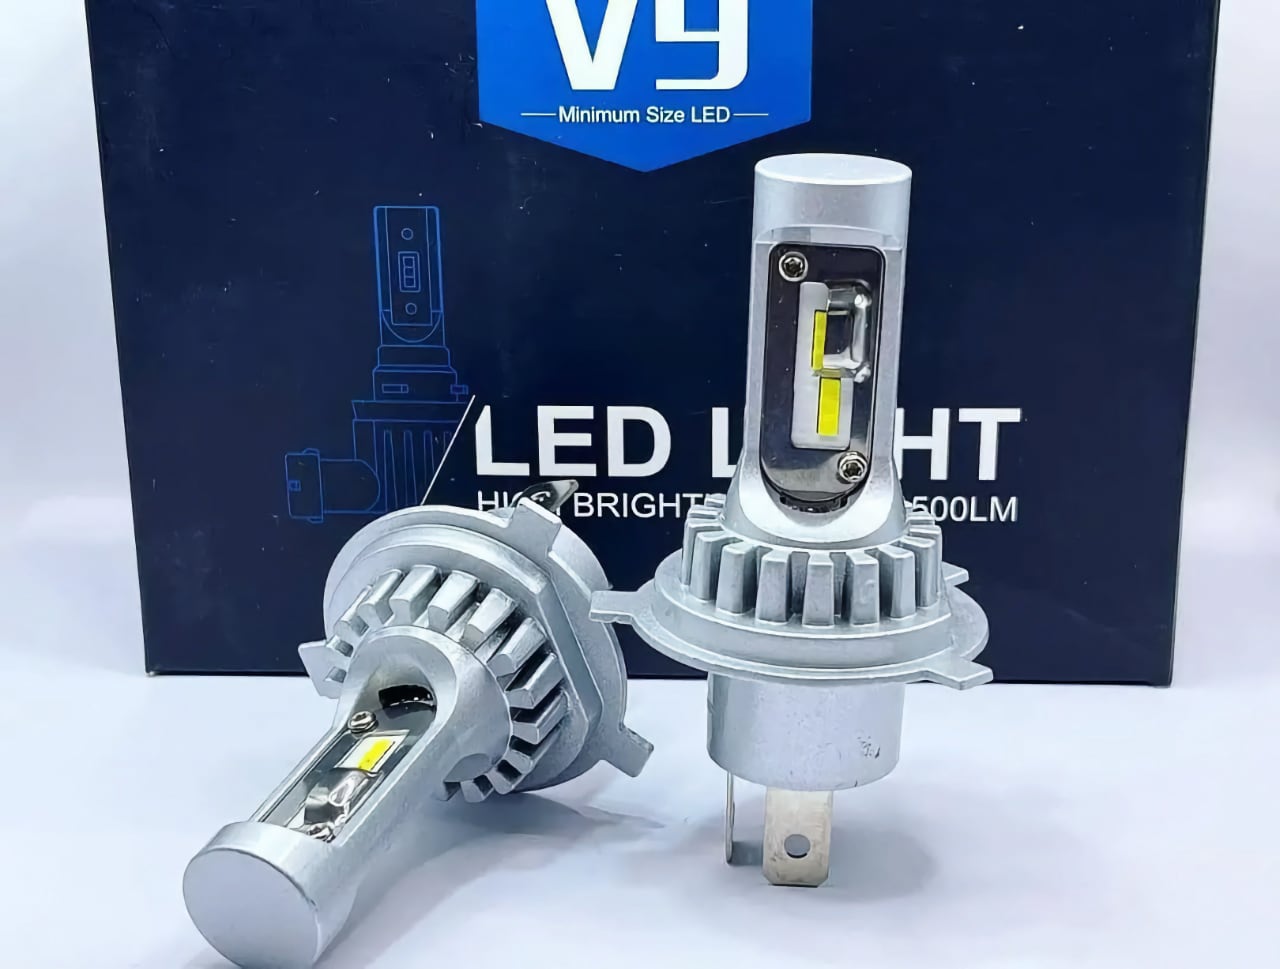 LED лампы для автомобиля, а также коробка для их упаковки с надписью "LED LIGHT" и указанием яркости "H6 BRIGHT 500LM